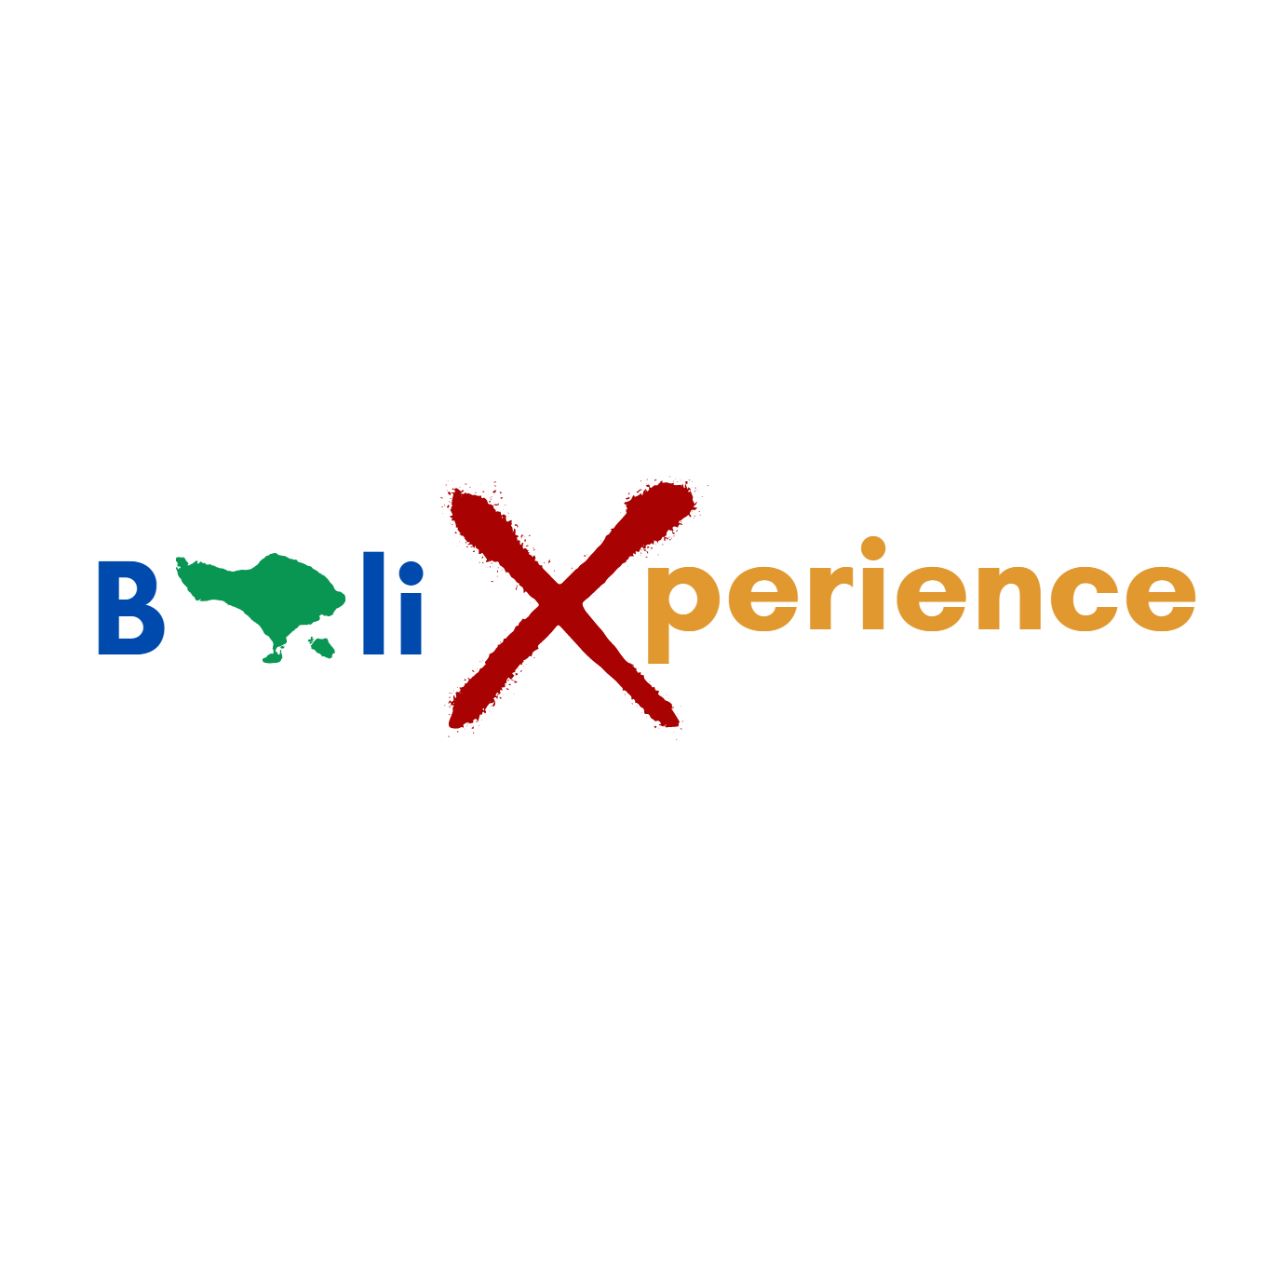 Bali Xperience